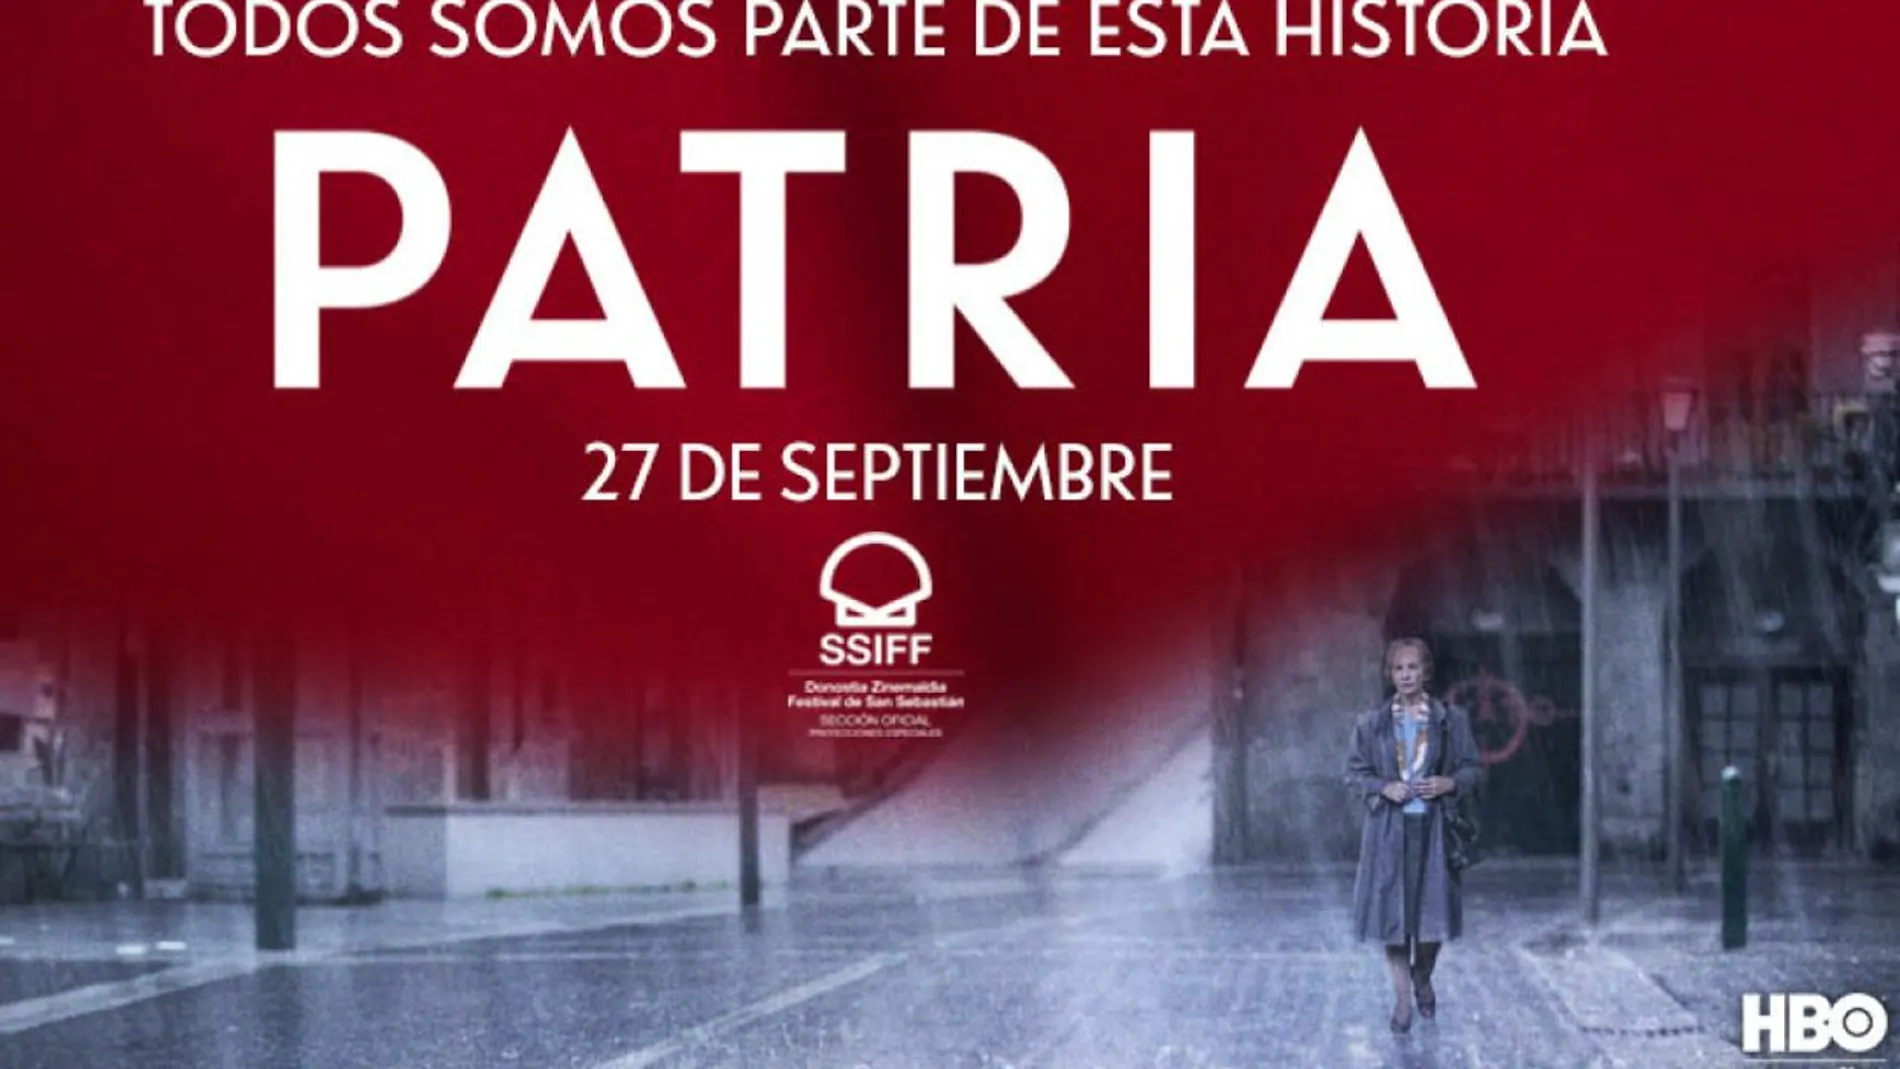 Segundo cartel promocional de "Patria"